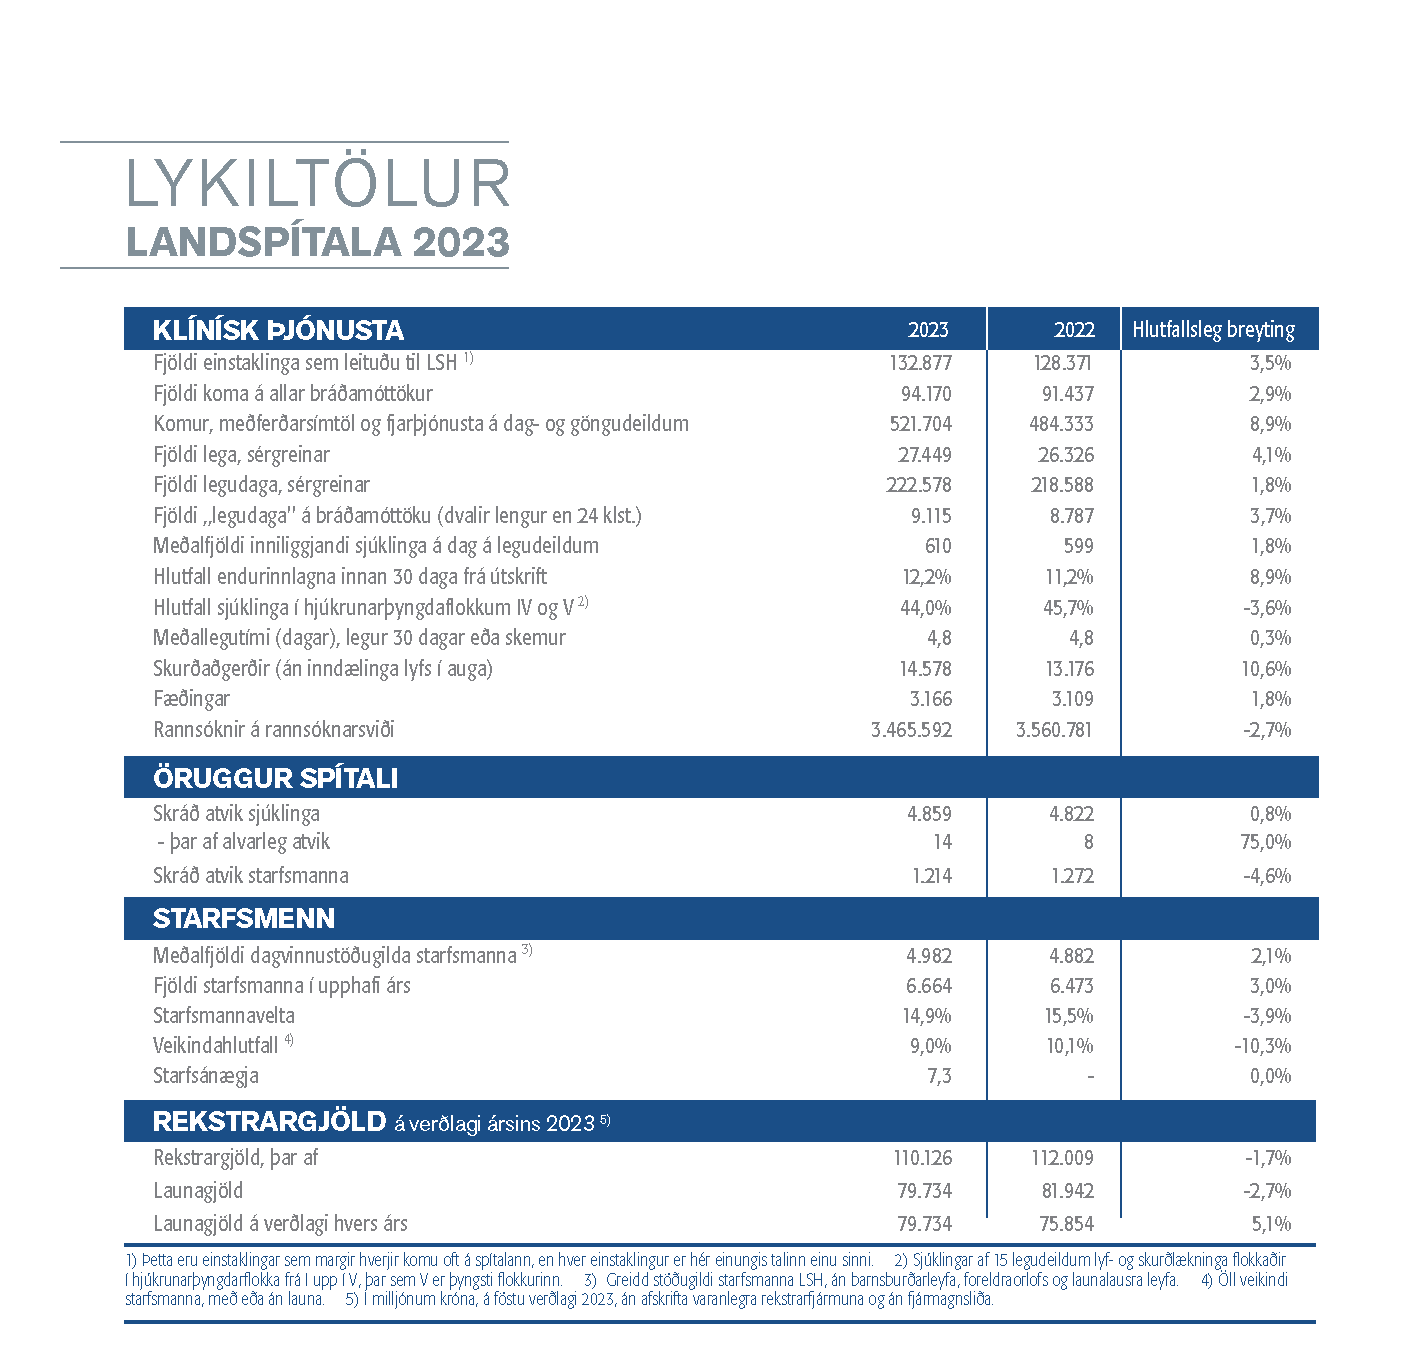 Lykiltölur Ladspítala samanburður áranna 2022 og 2023